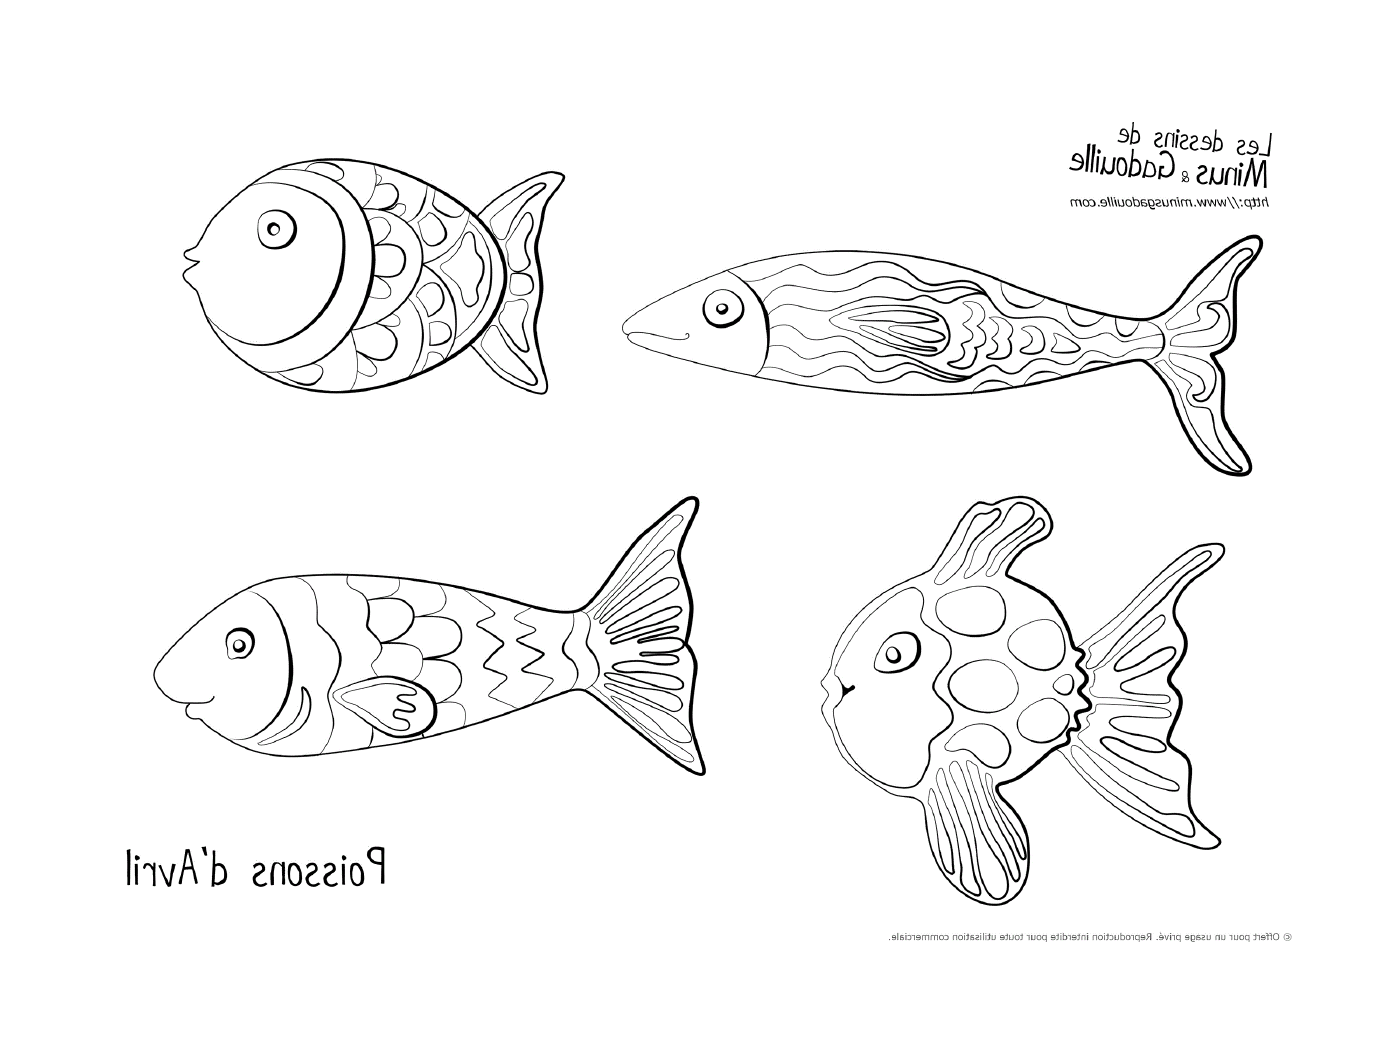  Cuatro peces extraídos 